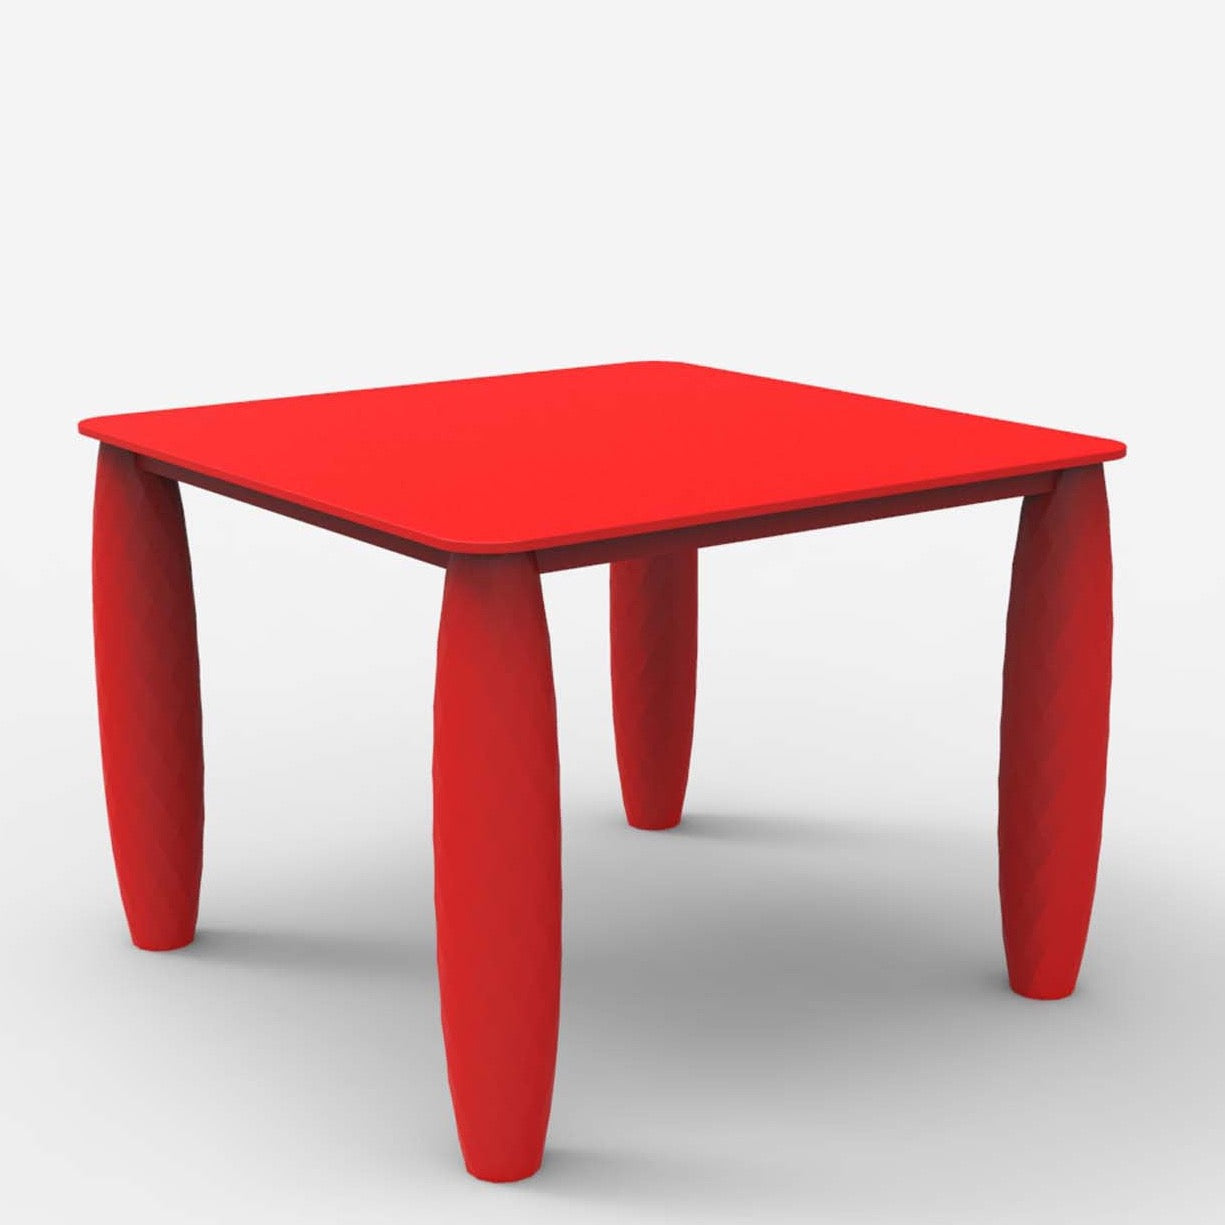 Vondom VASES table, square 100x100cm